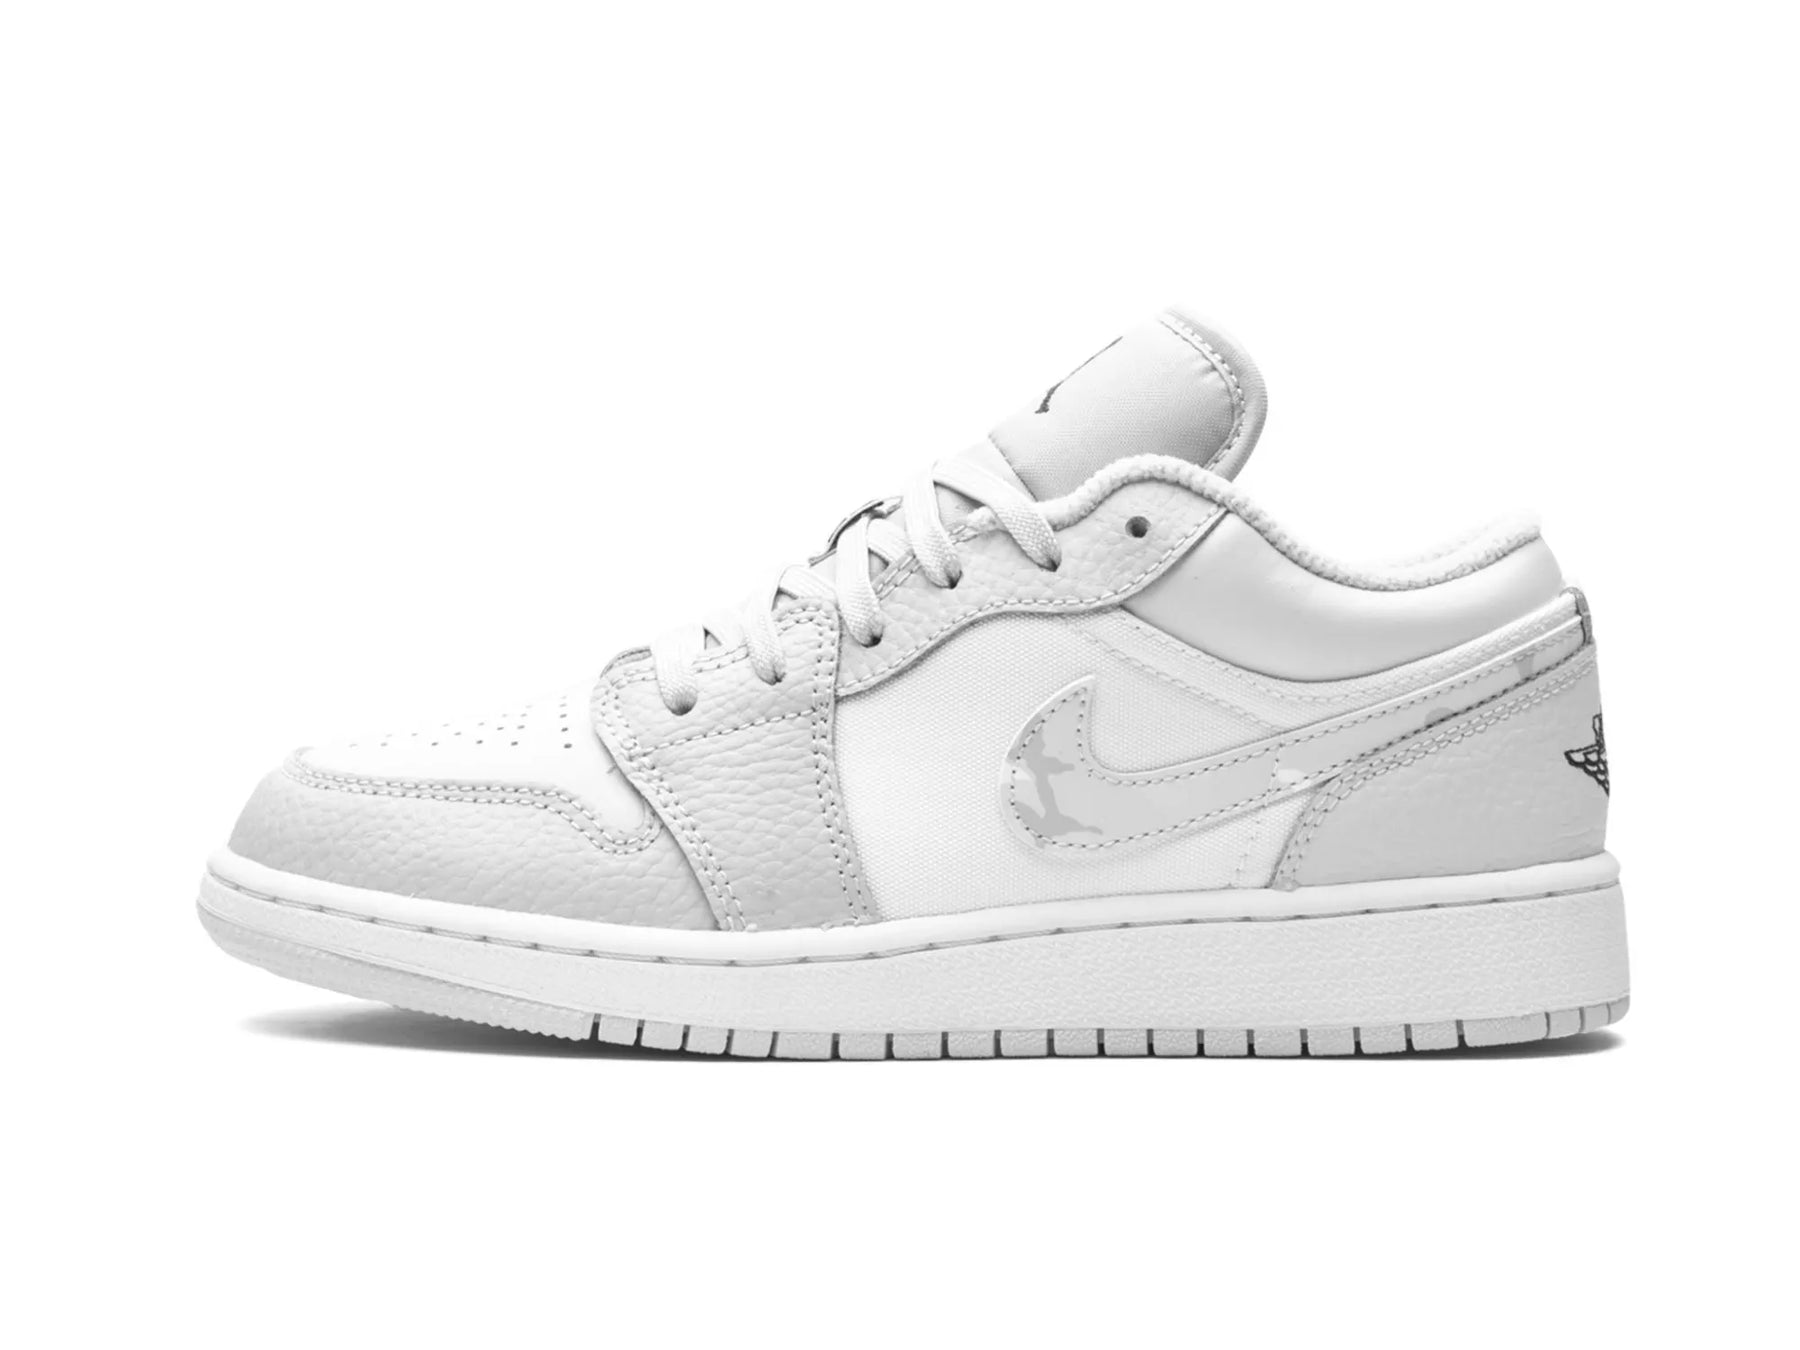 Nike Air Jordan 1 Low "Grey Camo" - street-bill.dk